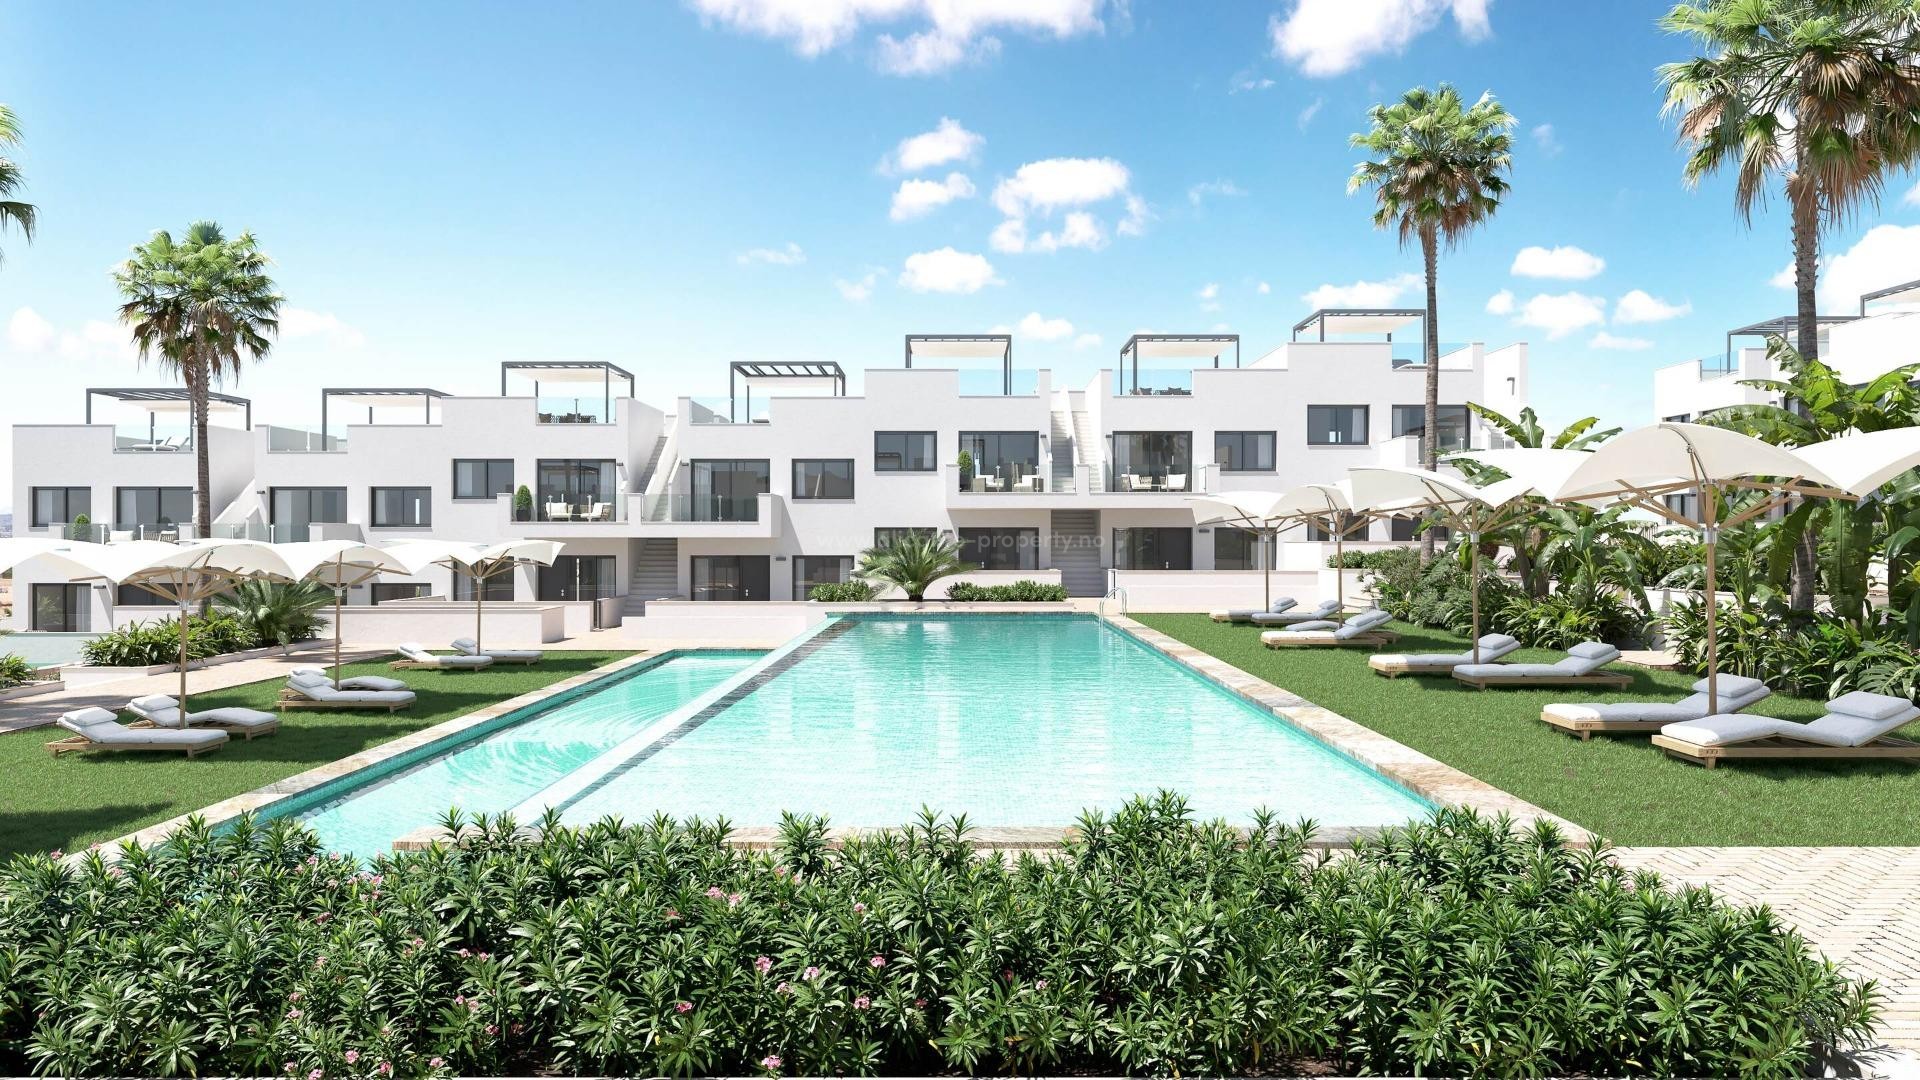 Nye bungalow-leiligheter i Los Balcones, Torrevieja, 2/3 soverom, 2 bad, hage eller balkong og solarium, felles evighetsbassenget med panoramautsikt